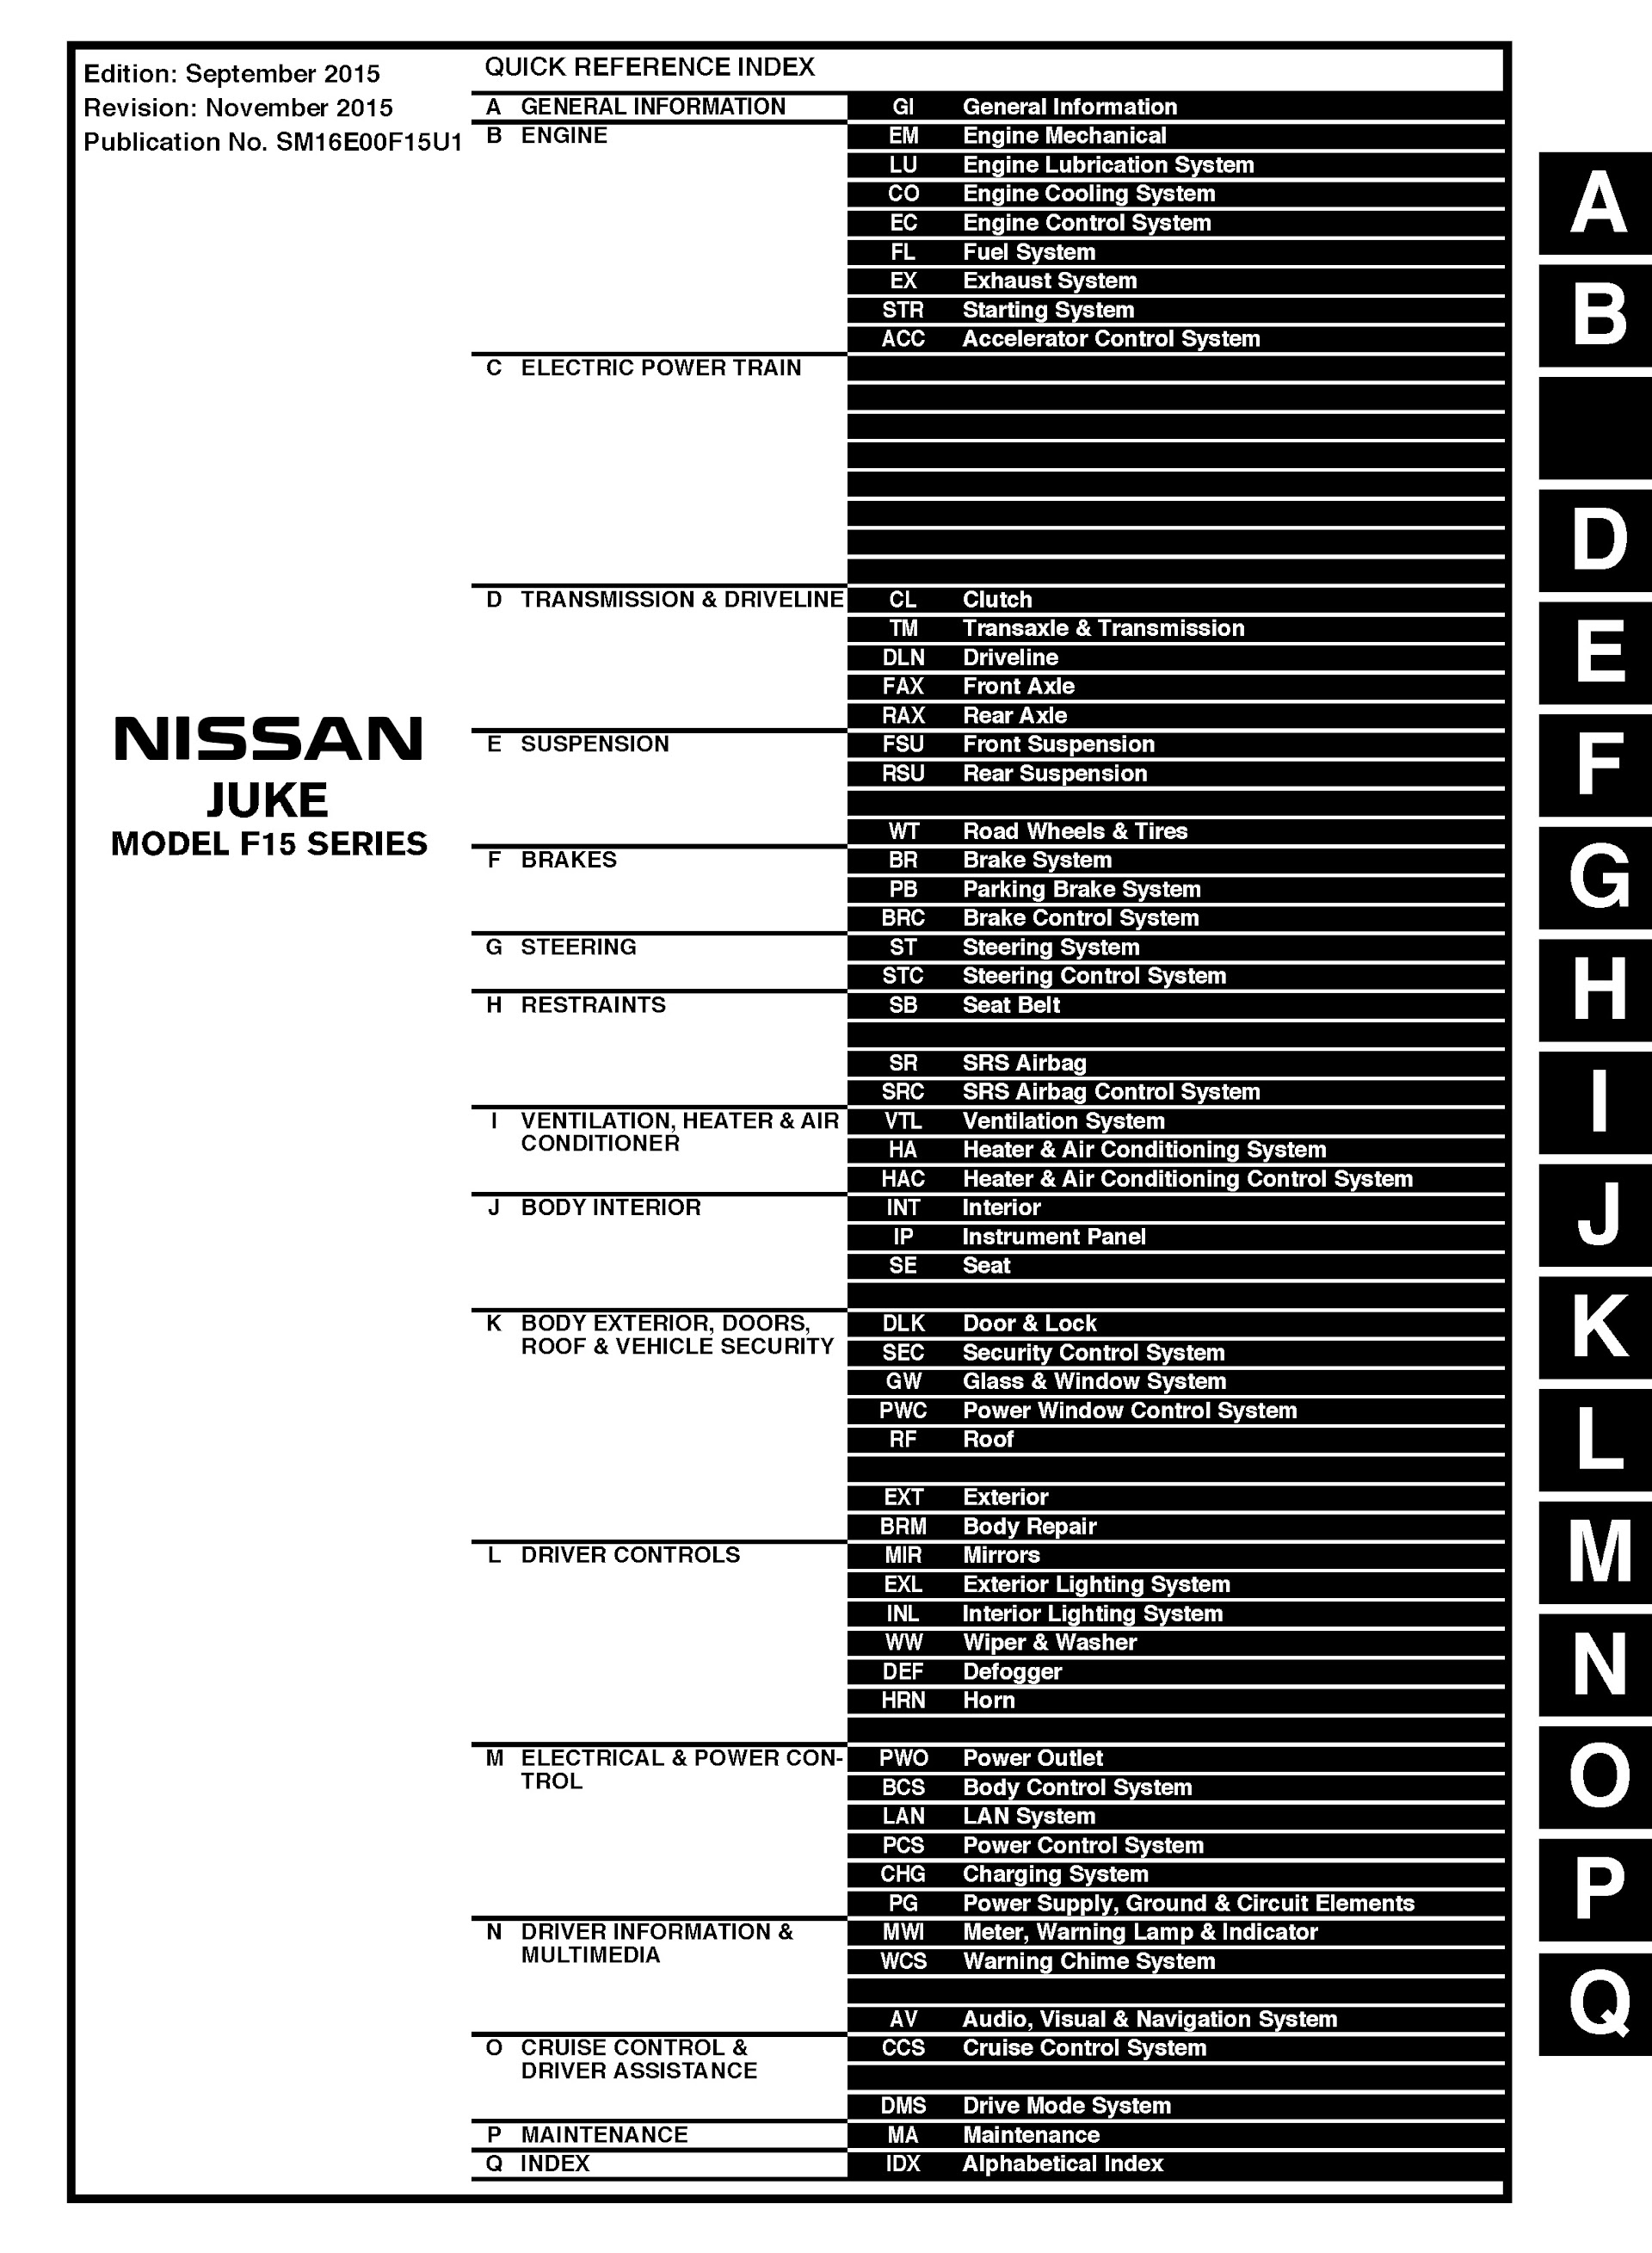 CONTENTS: 2016 Nissan Juke Repair Manual